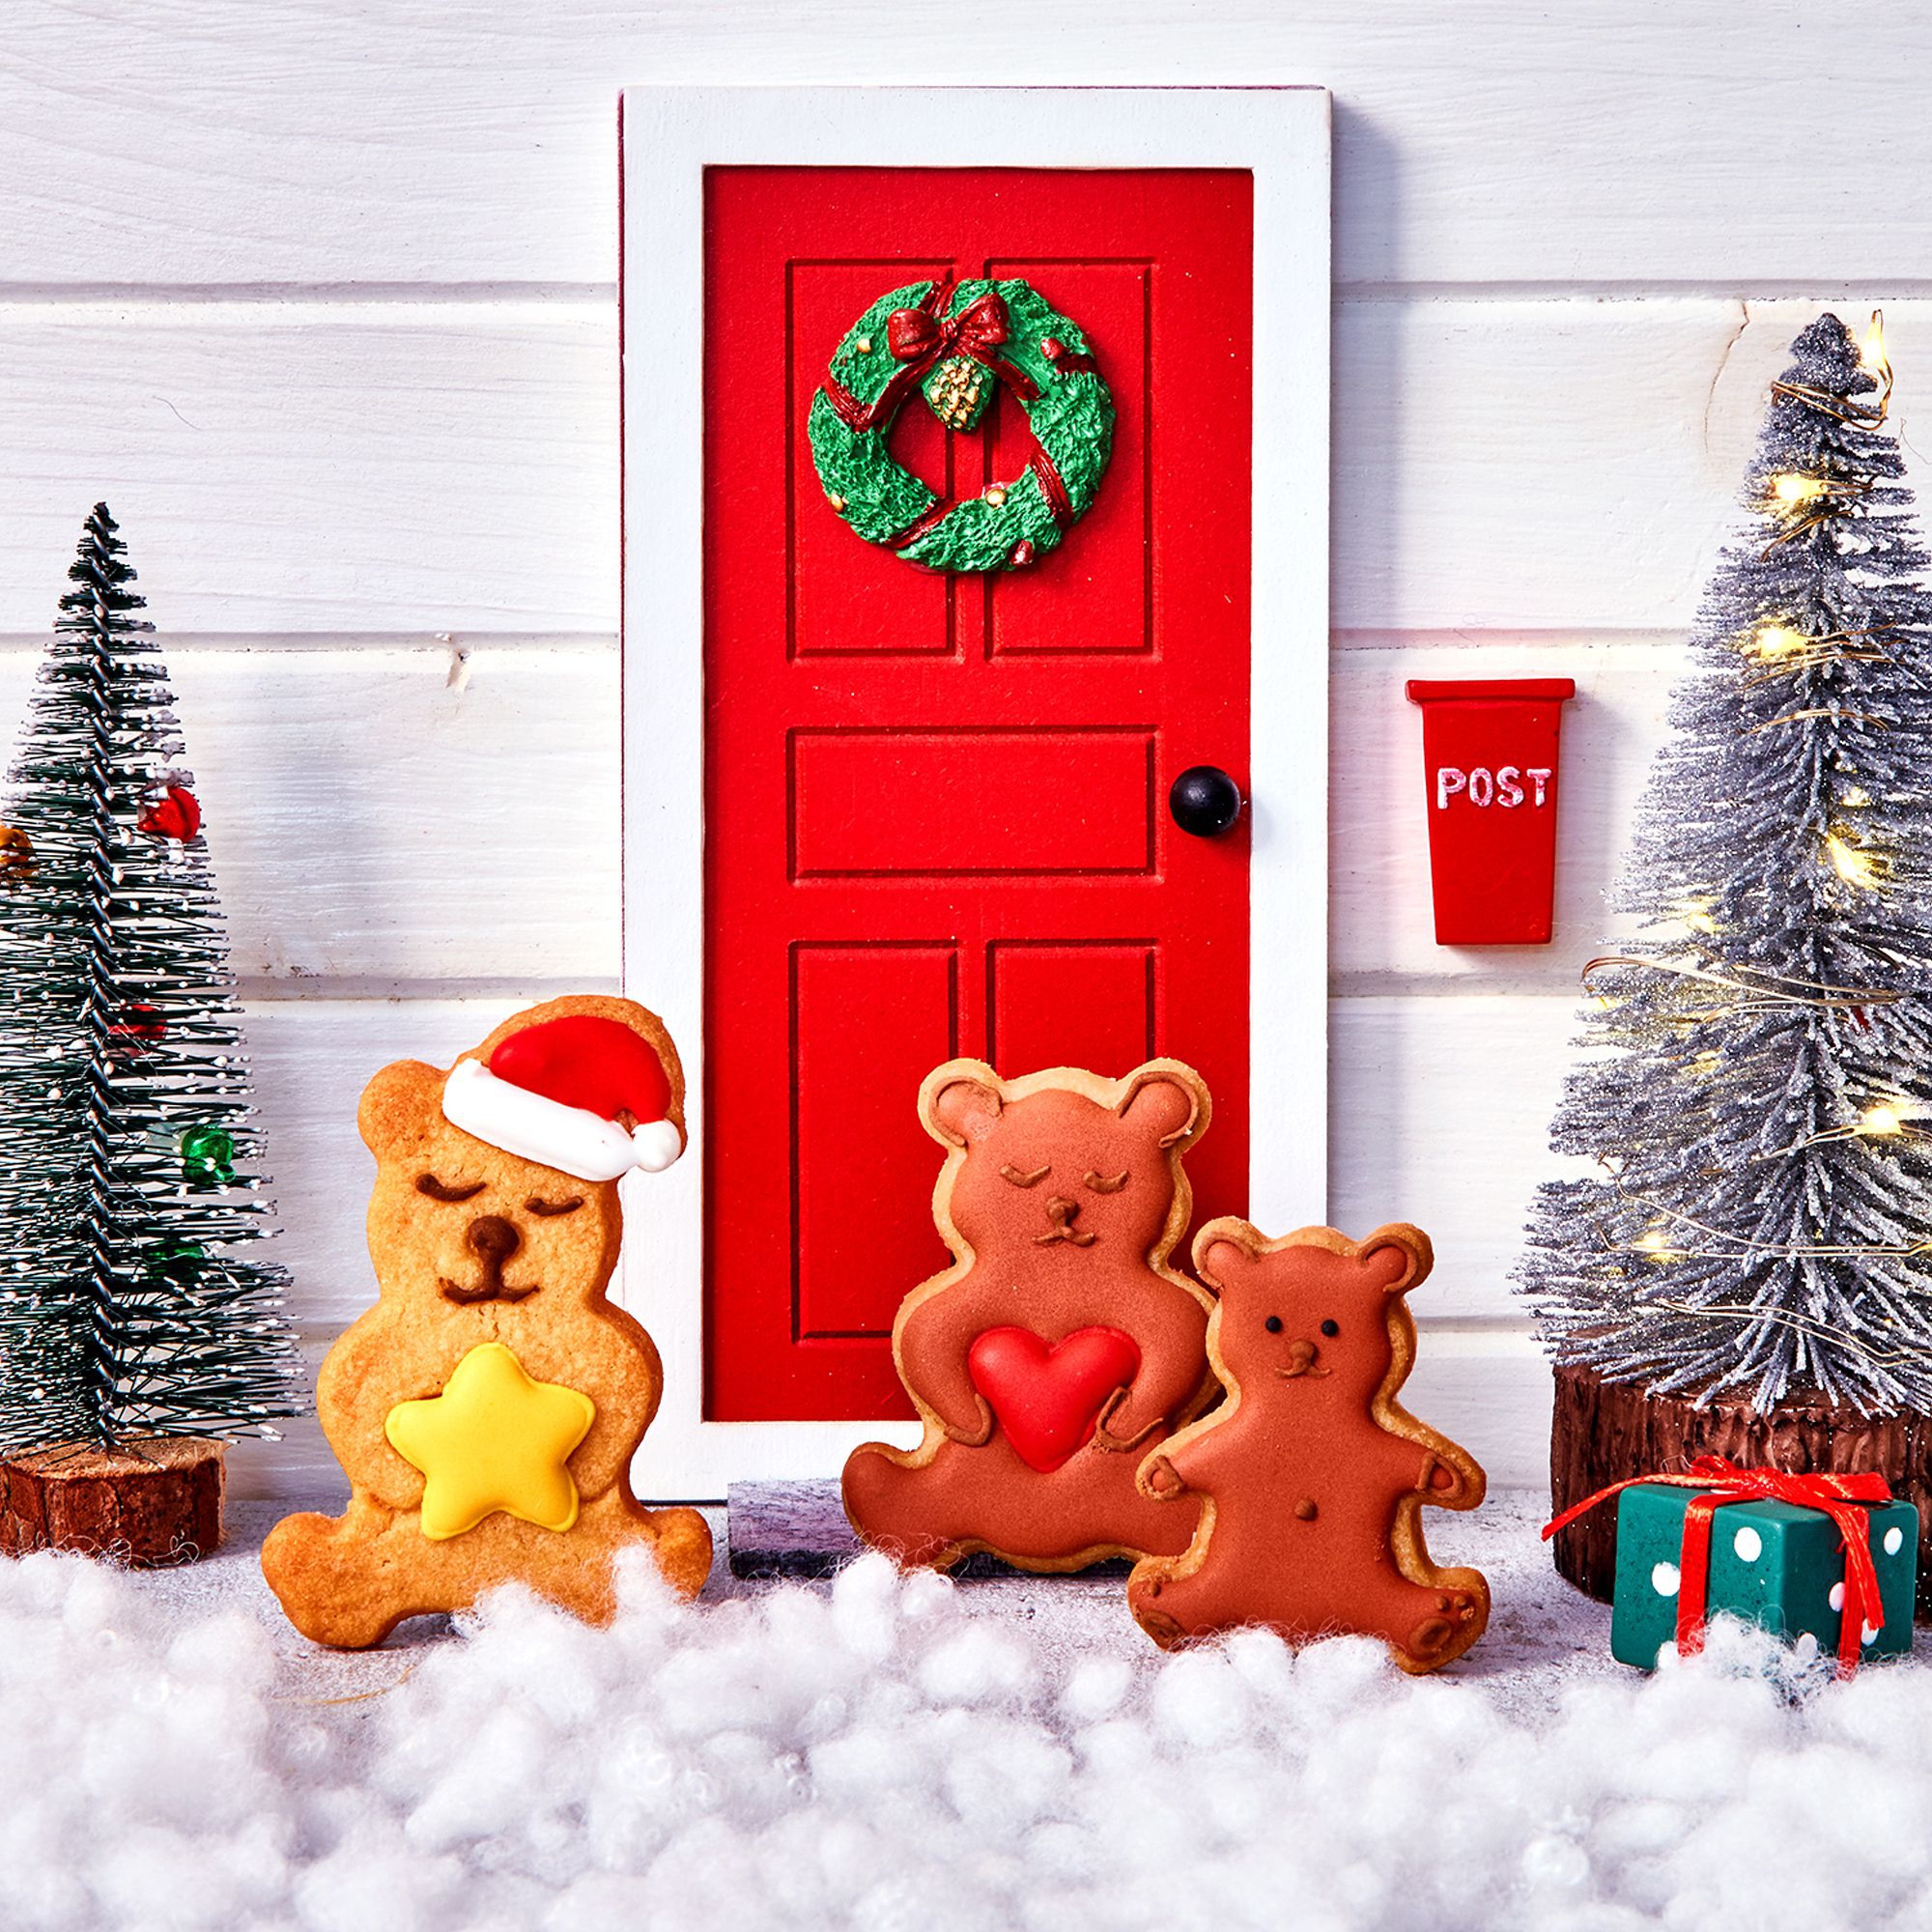 Birkmann - Cookie cutter - Christmas teddy bear with star - 7 cm